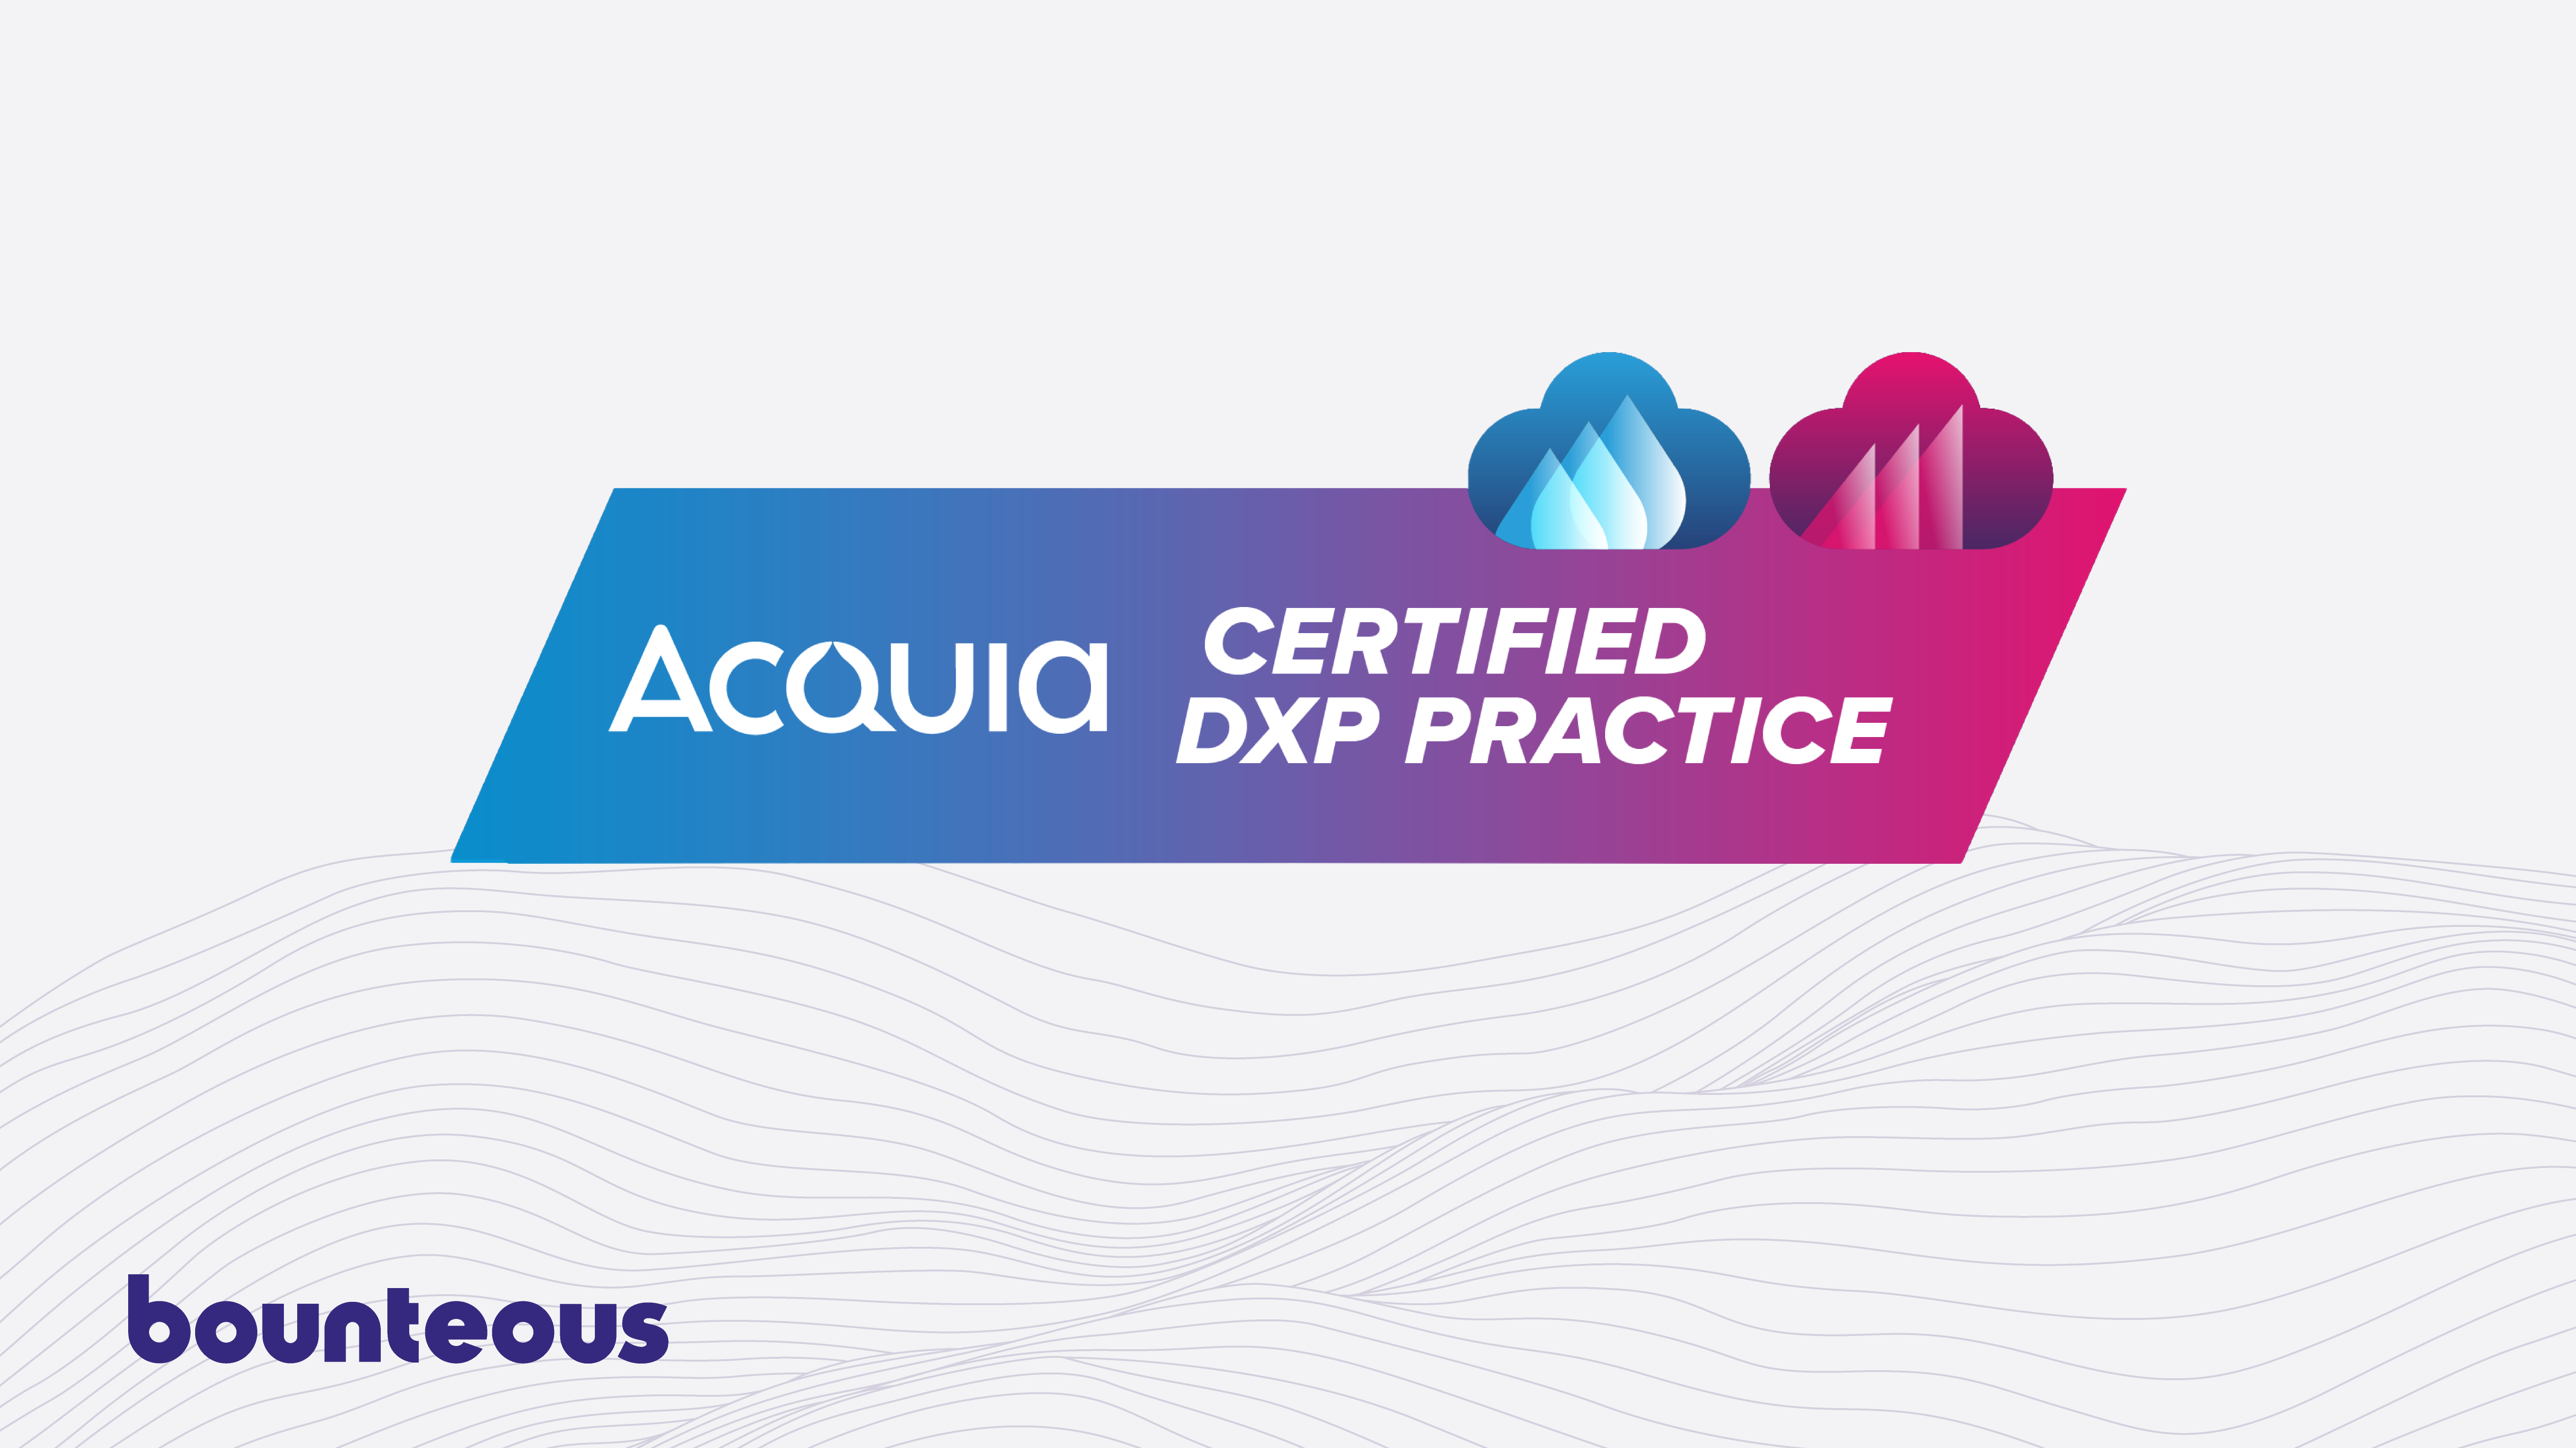 Press Release: Bounteous Achieves Acquia DXP Practice Certification